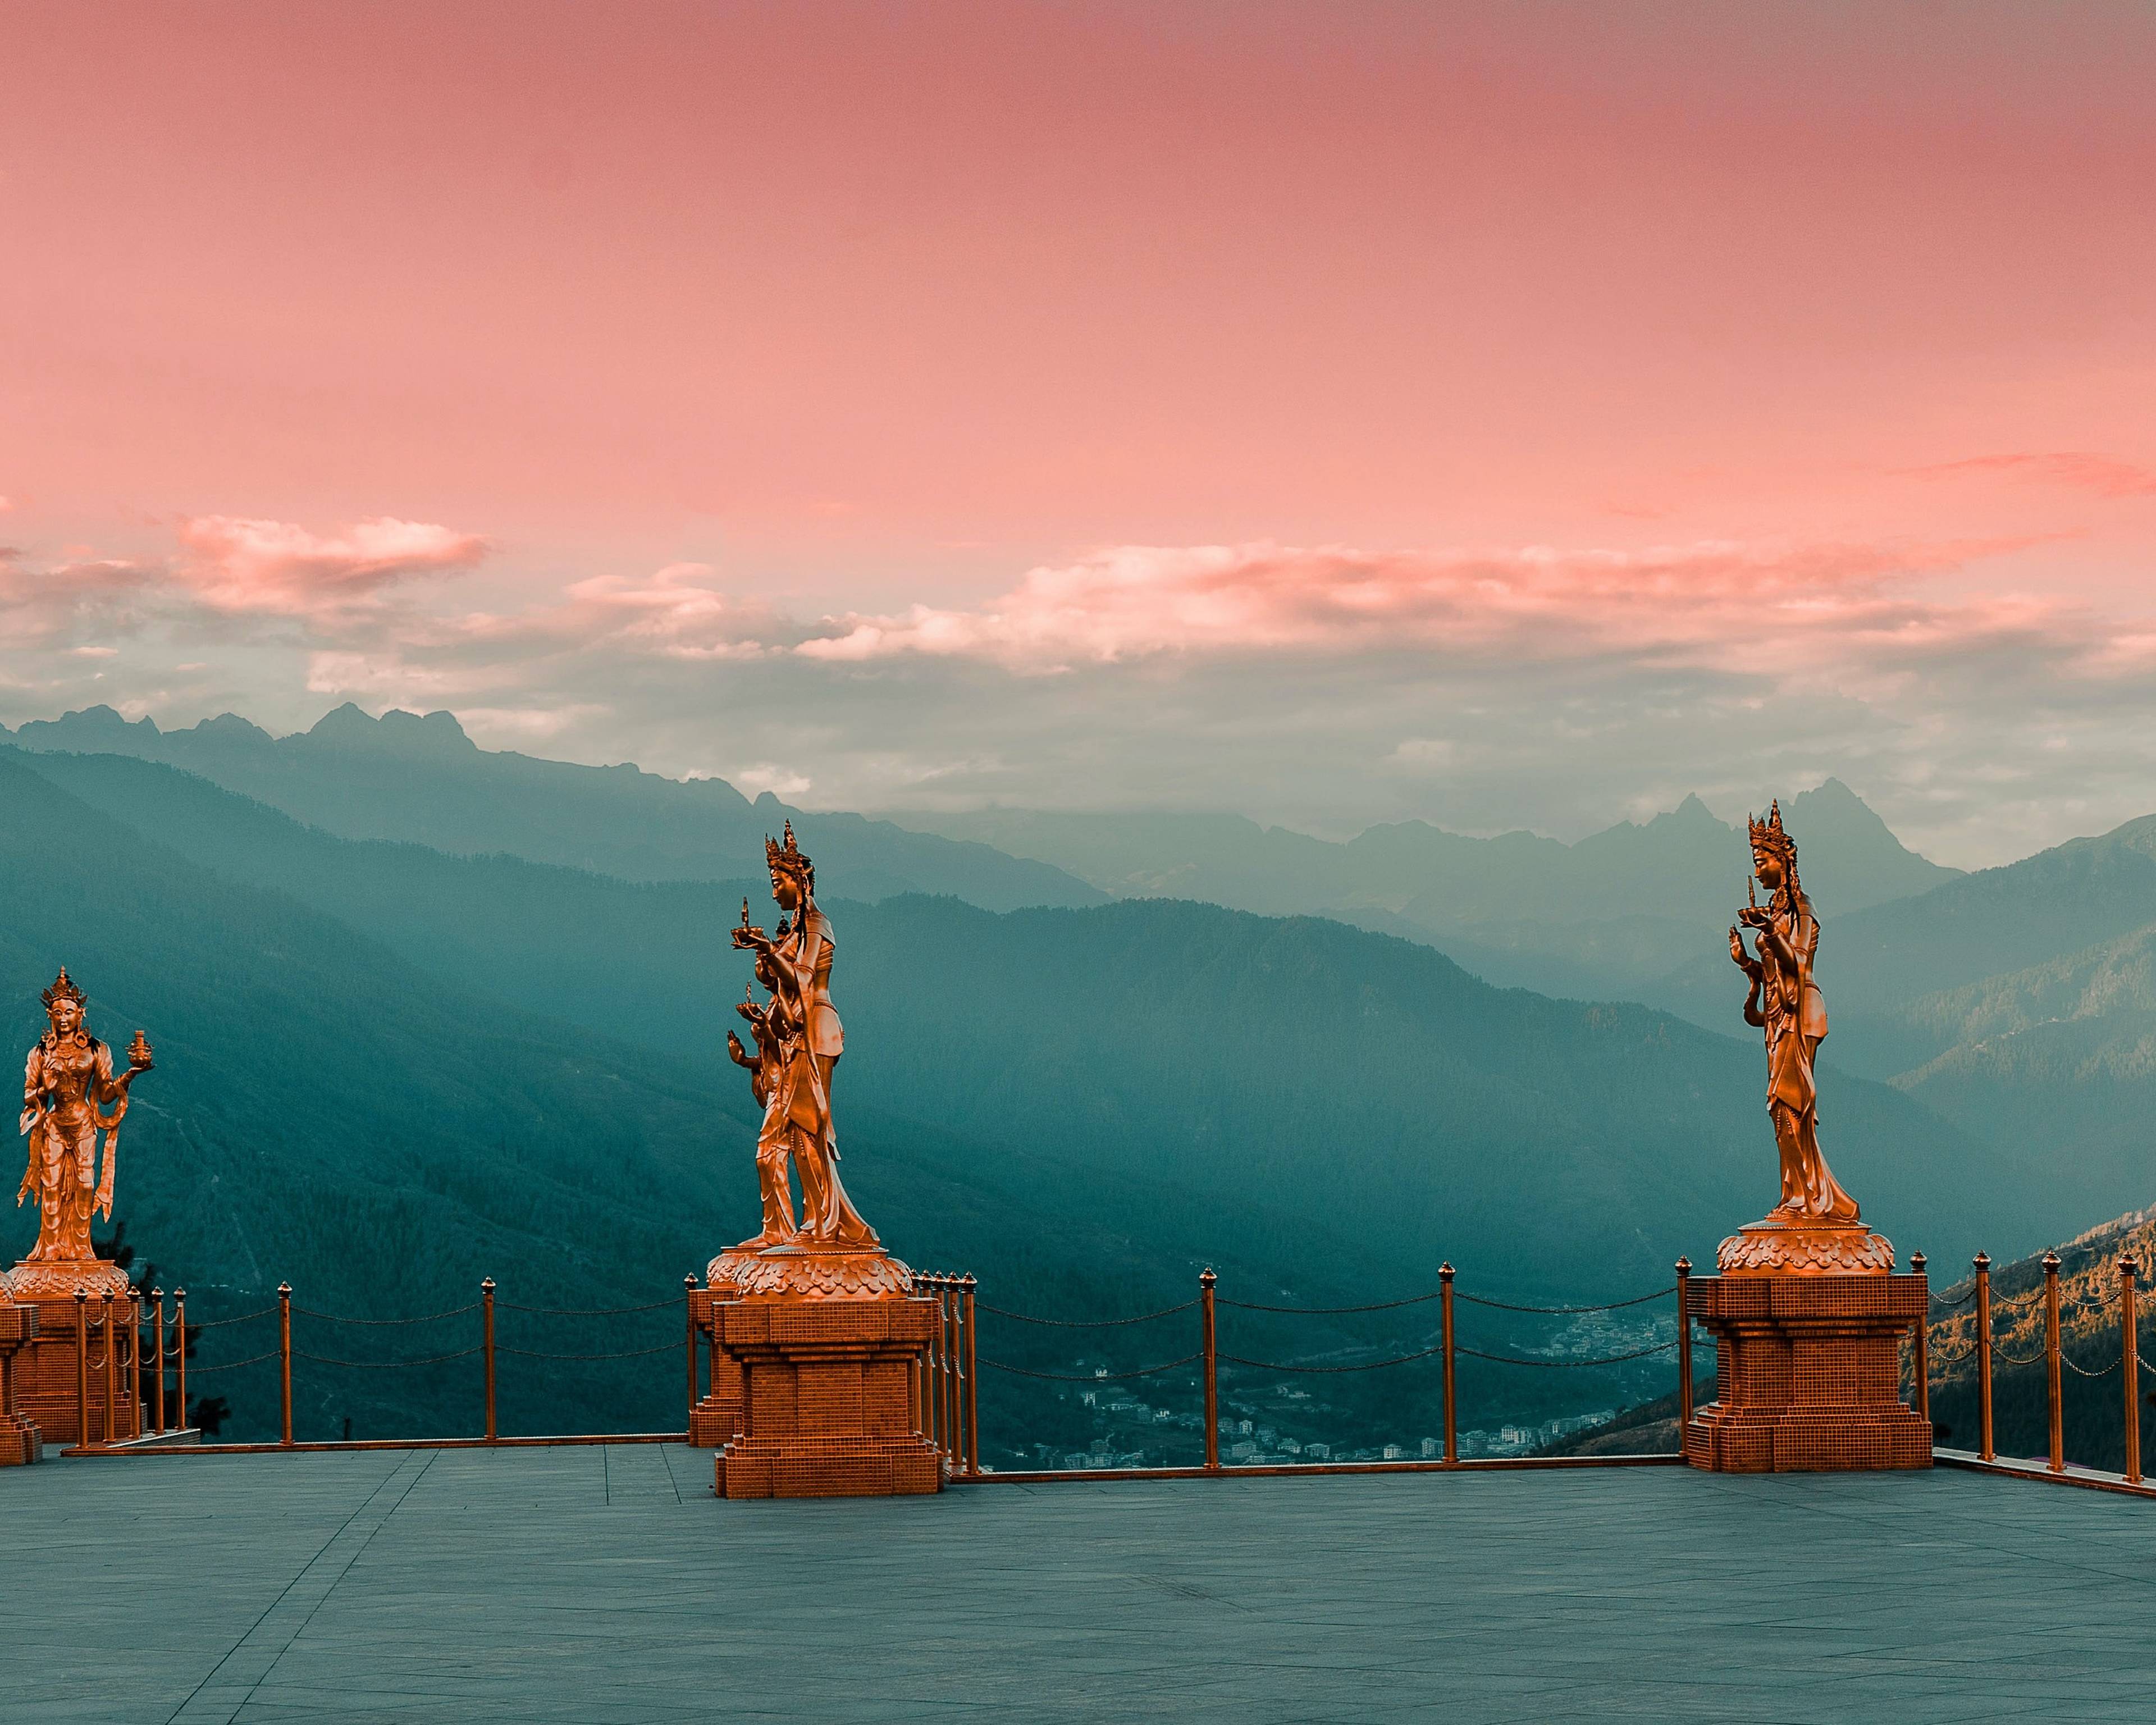 Ervaar de rijke cultuur en het adembenemende landschap van Nepal en Bhutan